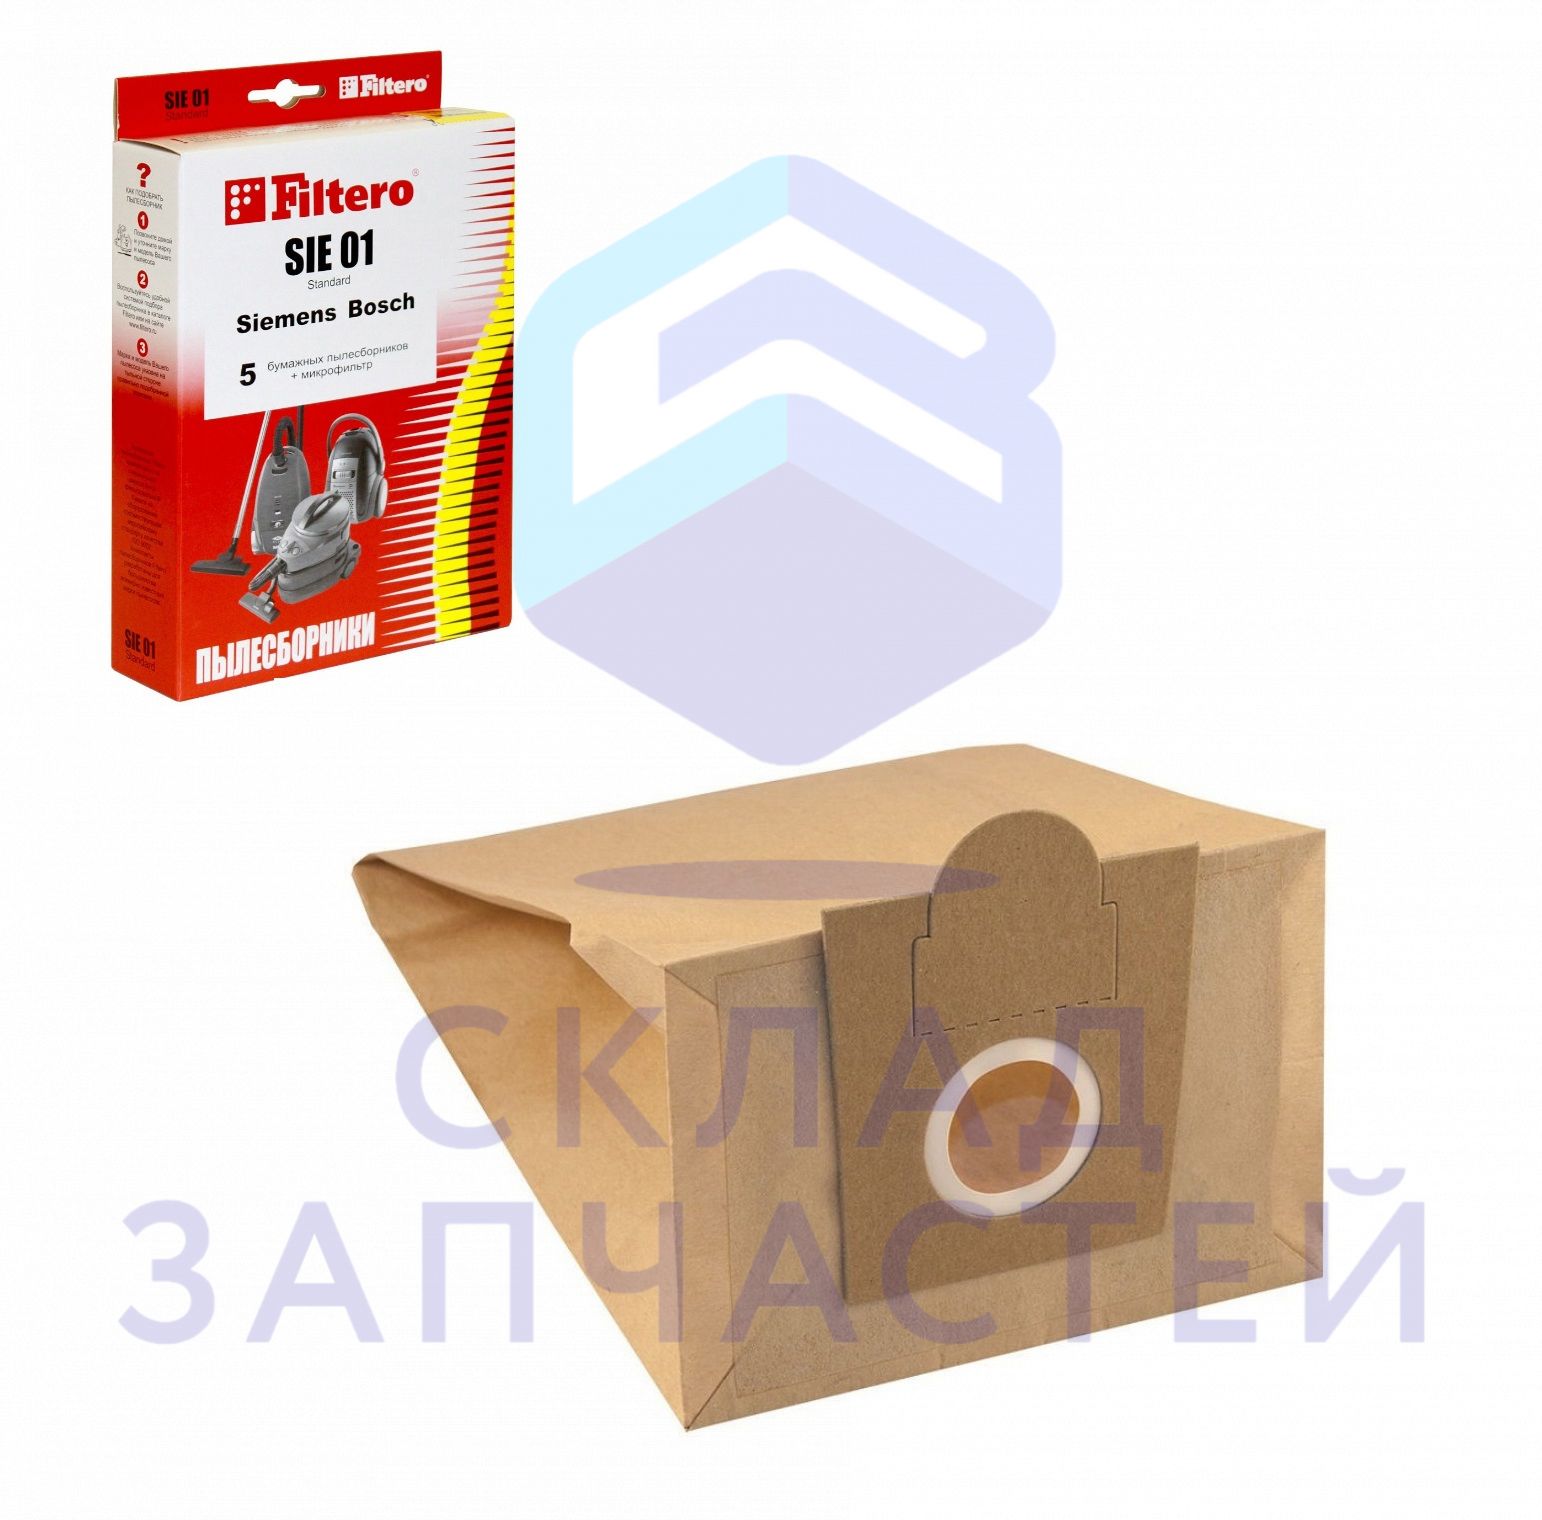 Мешки-пылесборники бумажные для пылесоса, 5 шт. + фильтр S  (Тип: G, D, E, F) BBZ10TFG, BBZ41FG, VZ41AFG для Bosch BGL3CARP/01 аналог (Filtero)